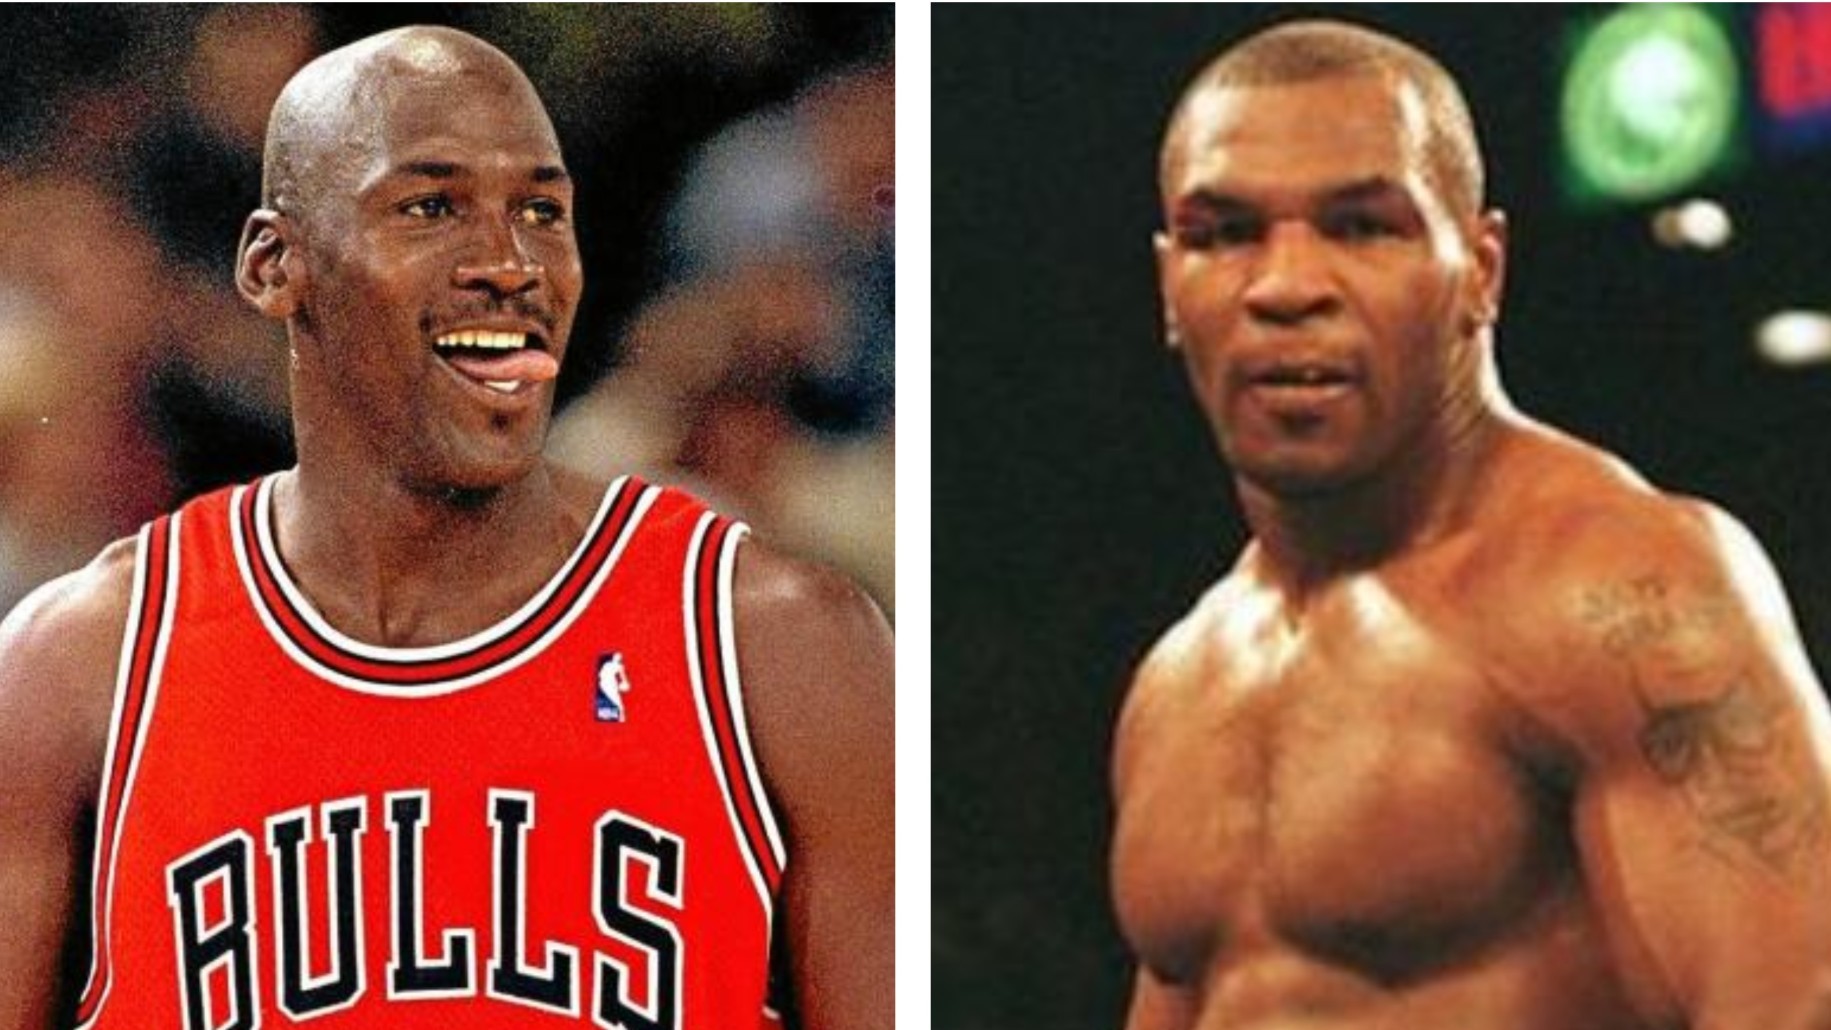 La pelea que Jordan no habra podido ganar: Mike Tyson estuvo a punto de pegarle